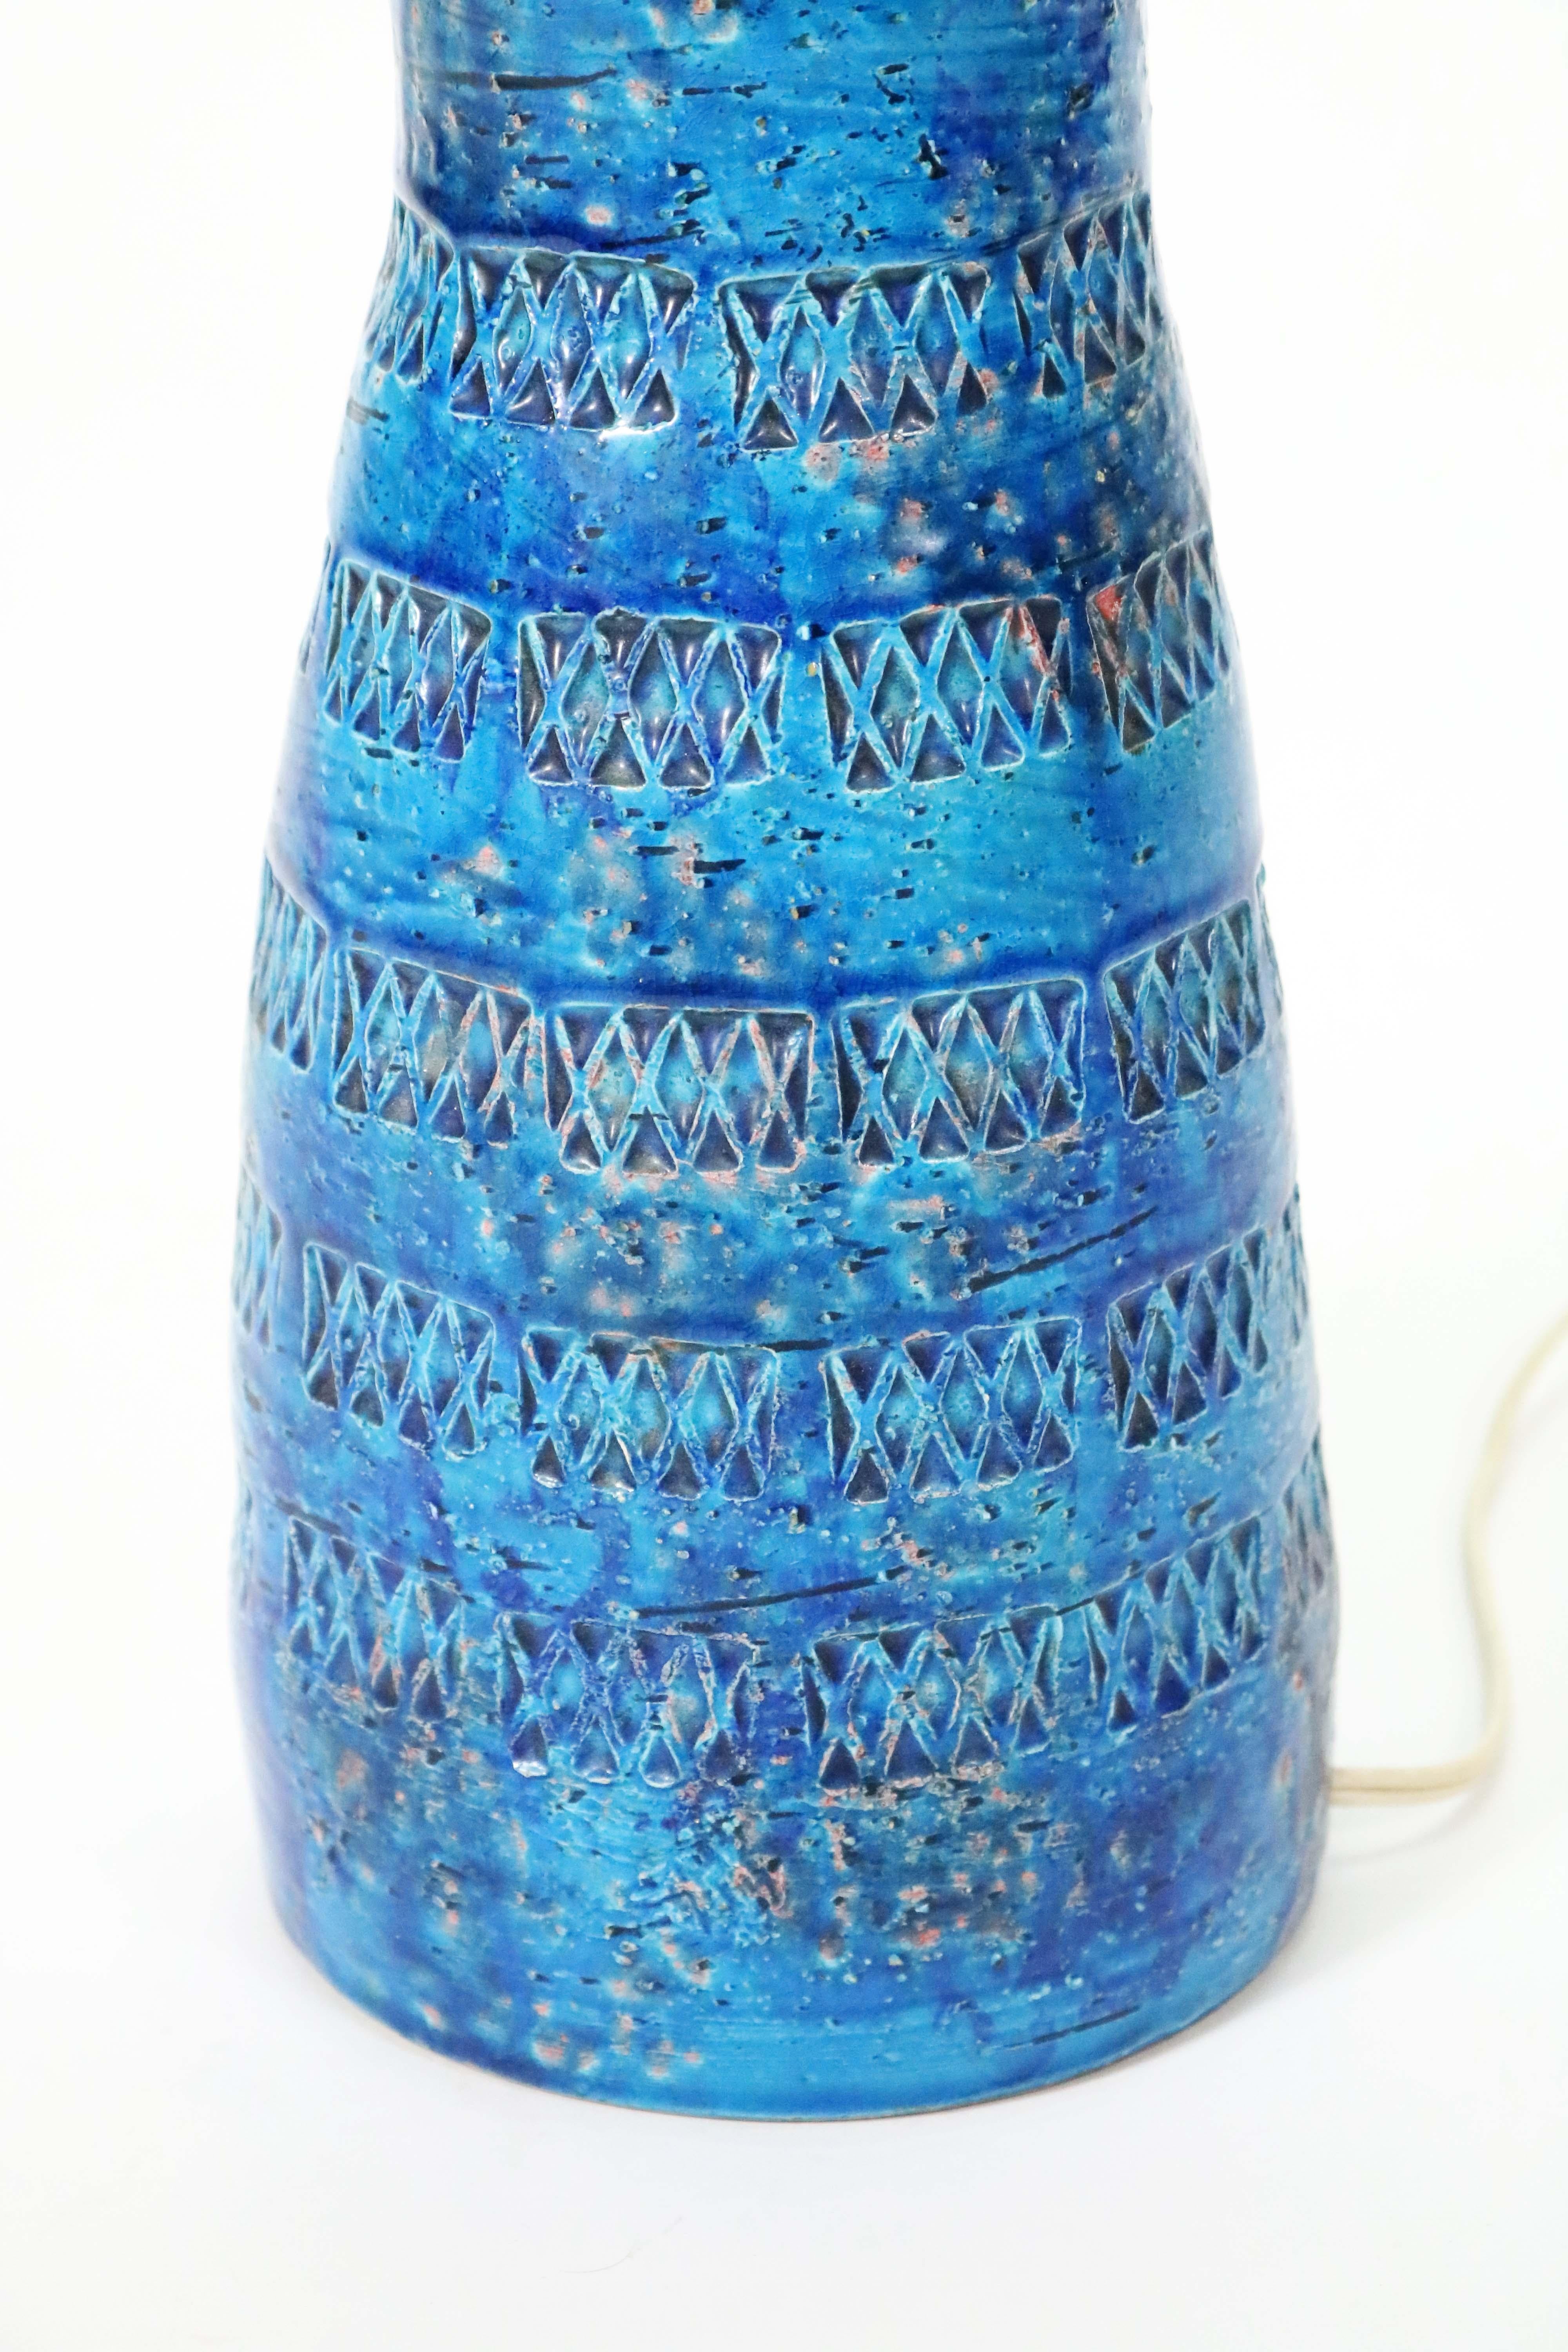 'Rimini Blu' Ceramic Lamp by Aldo Londi for Bitossi 1